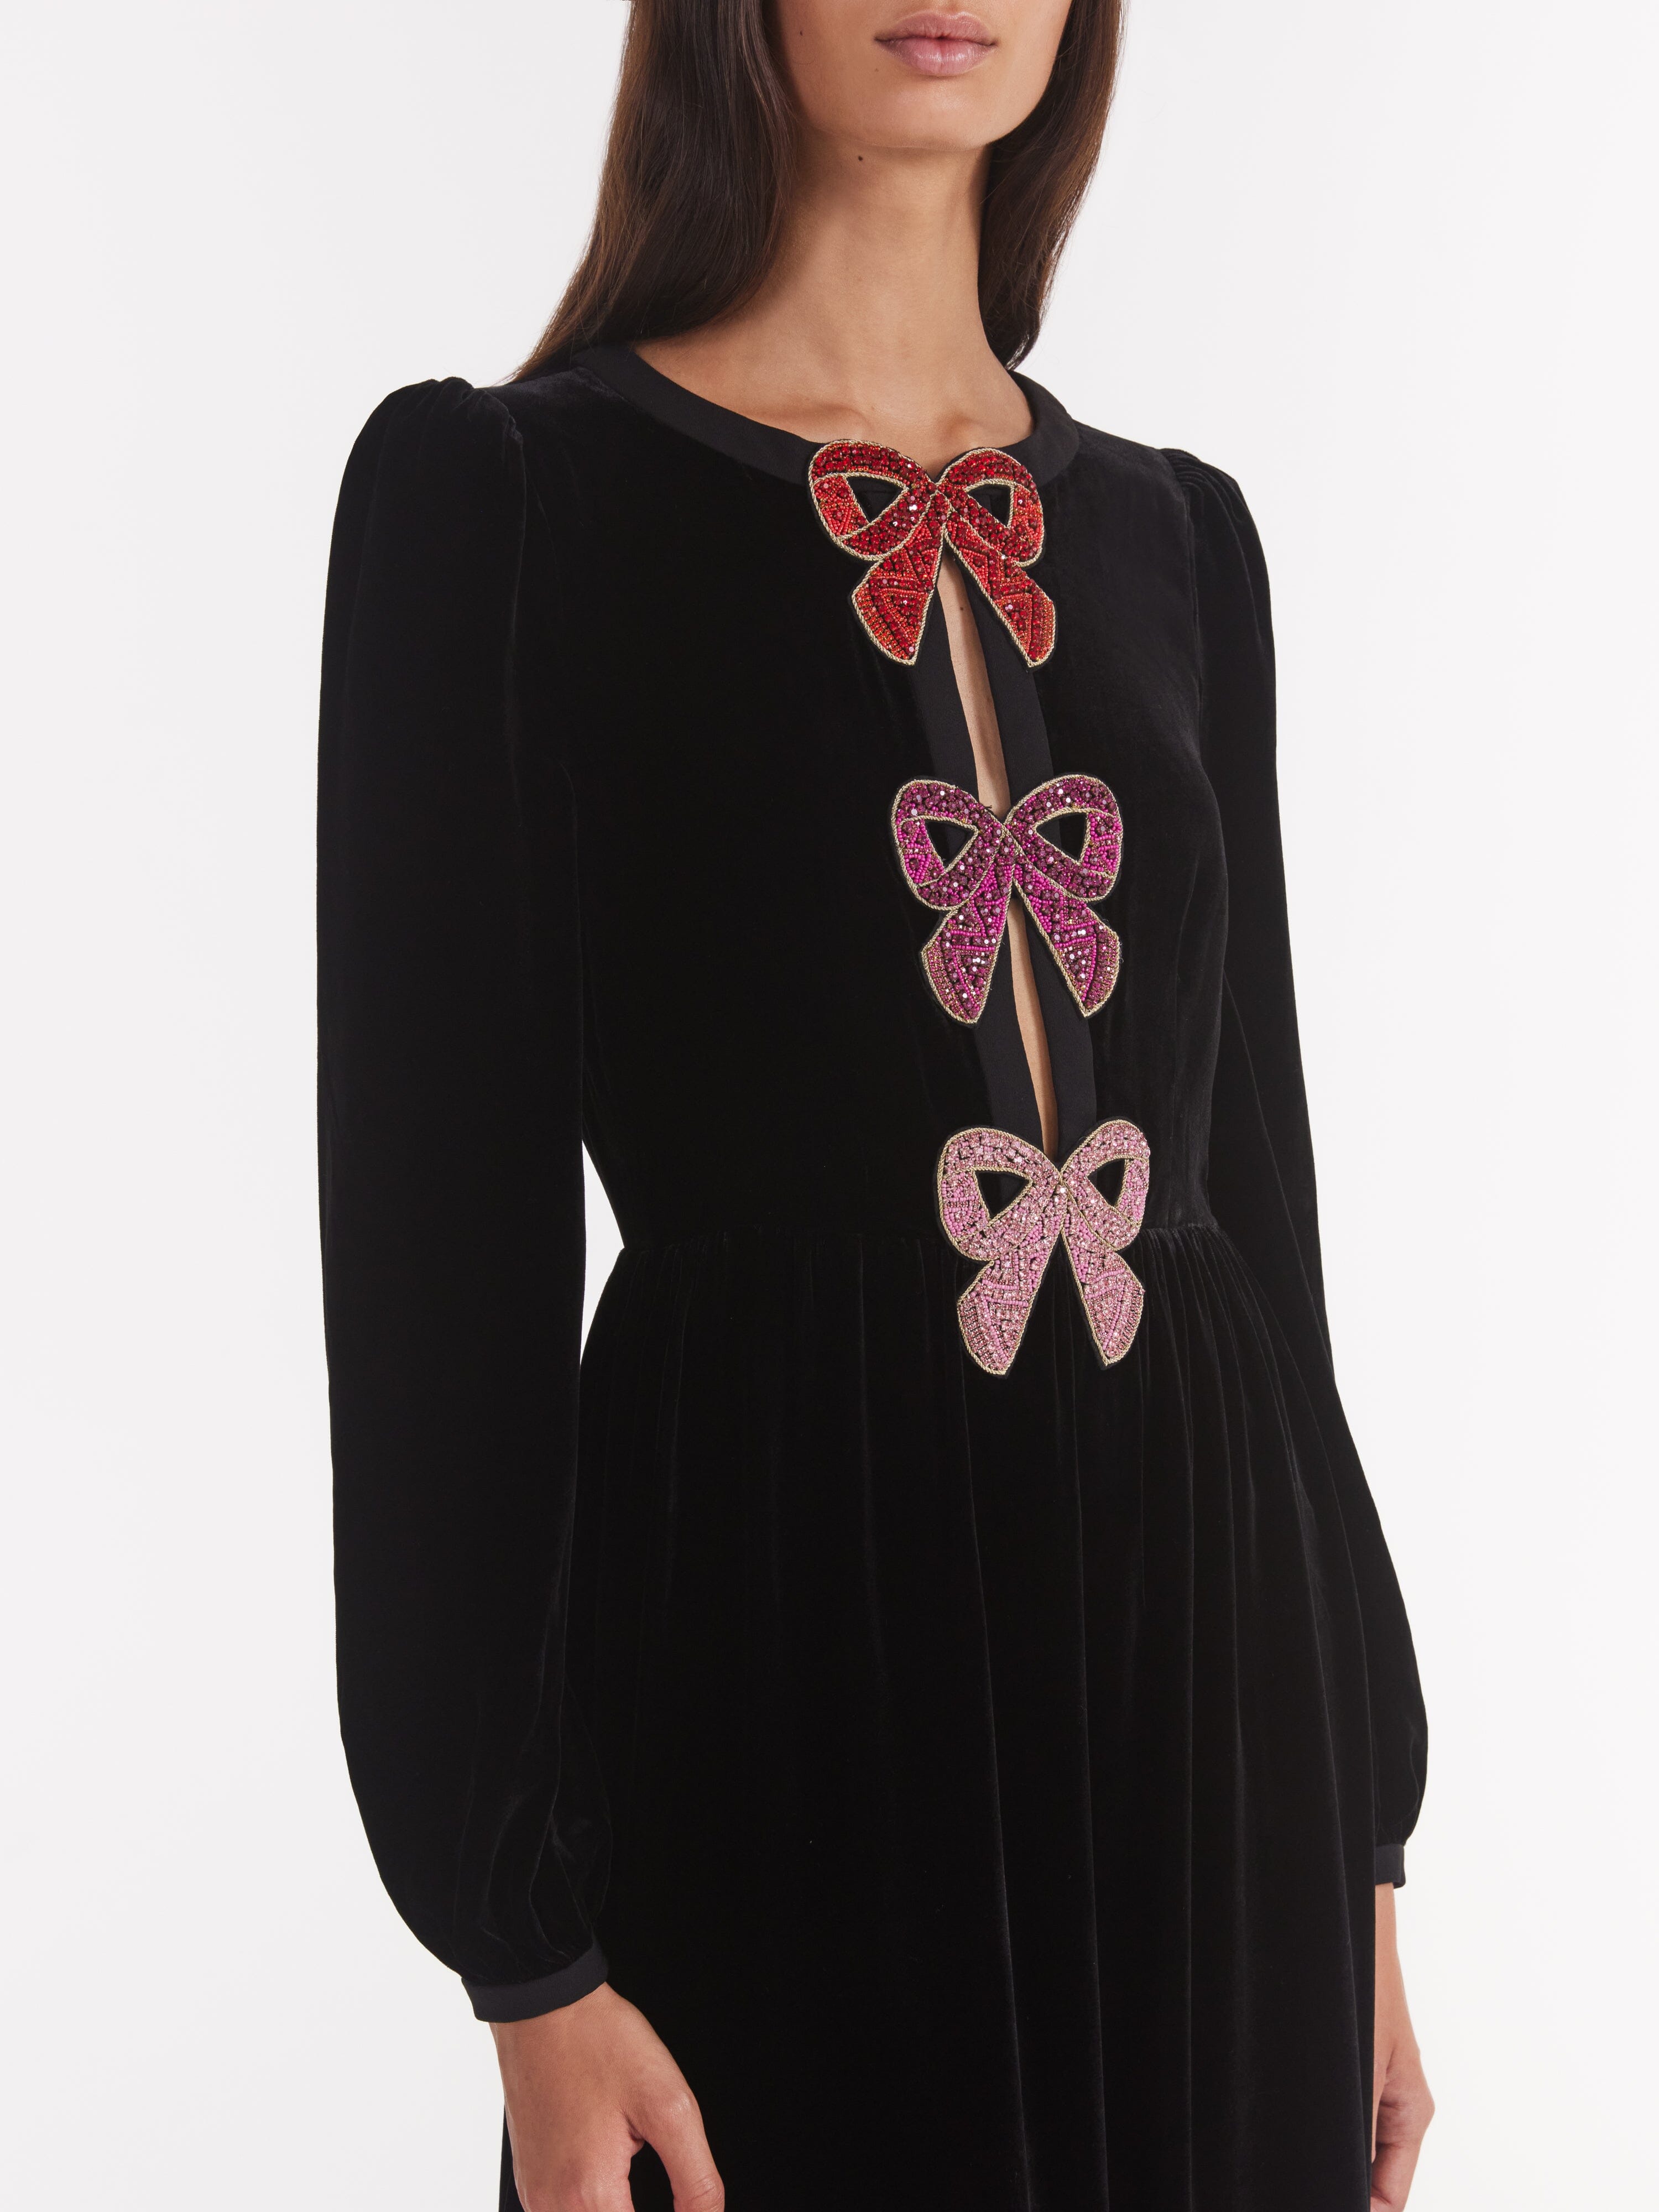 Camille Velvet Pink Bows Dress in Black